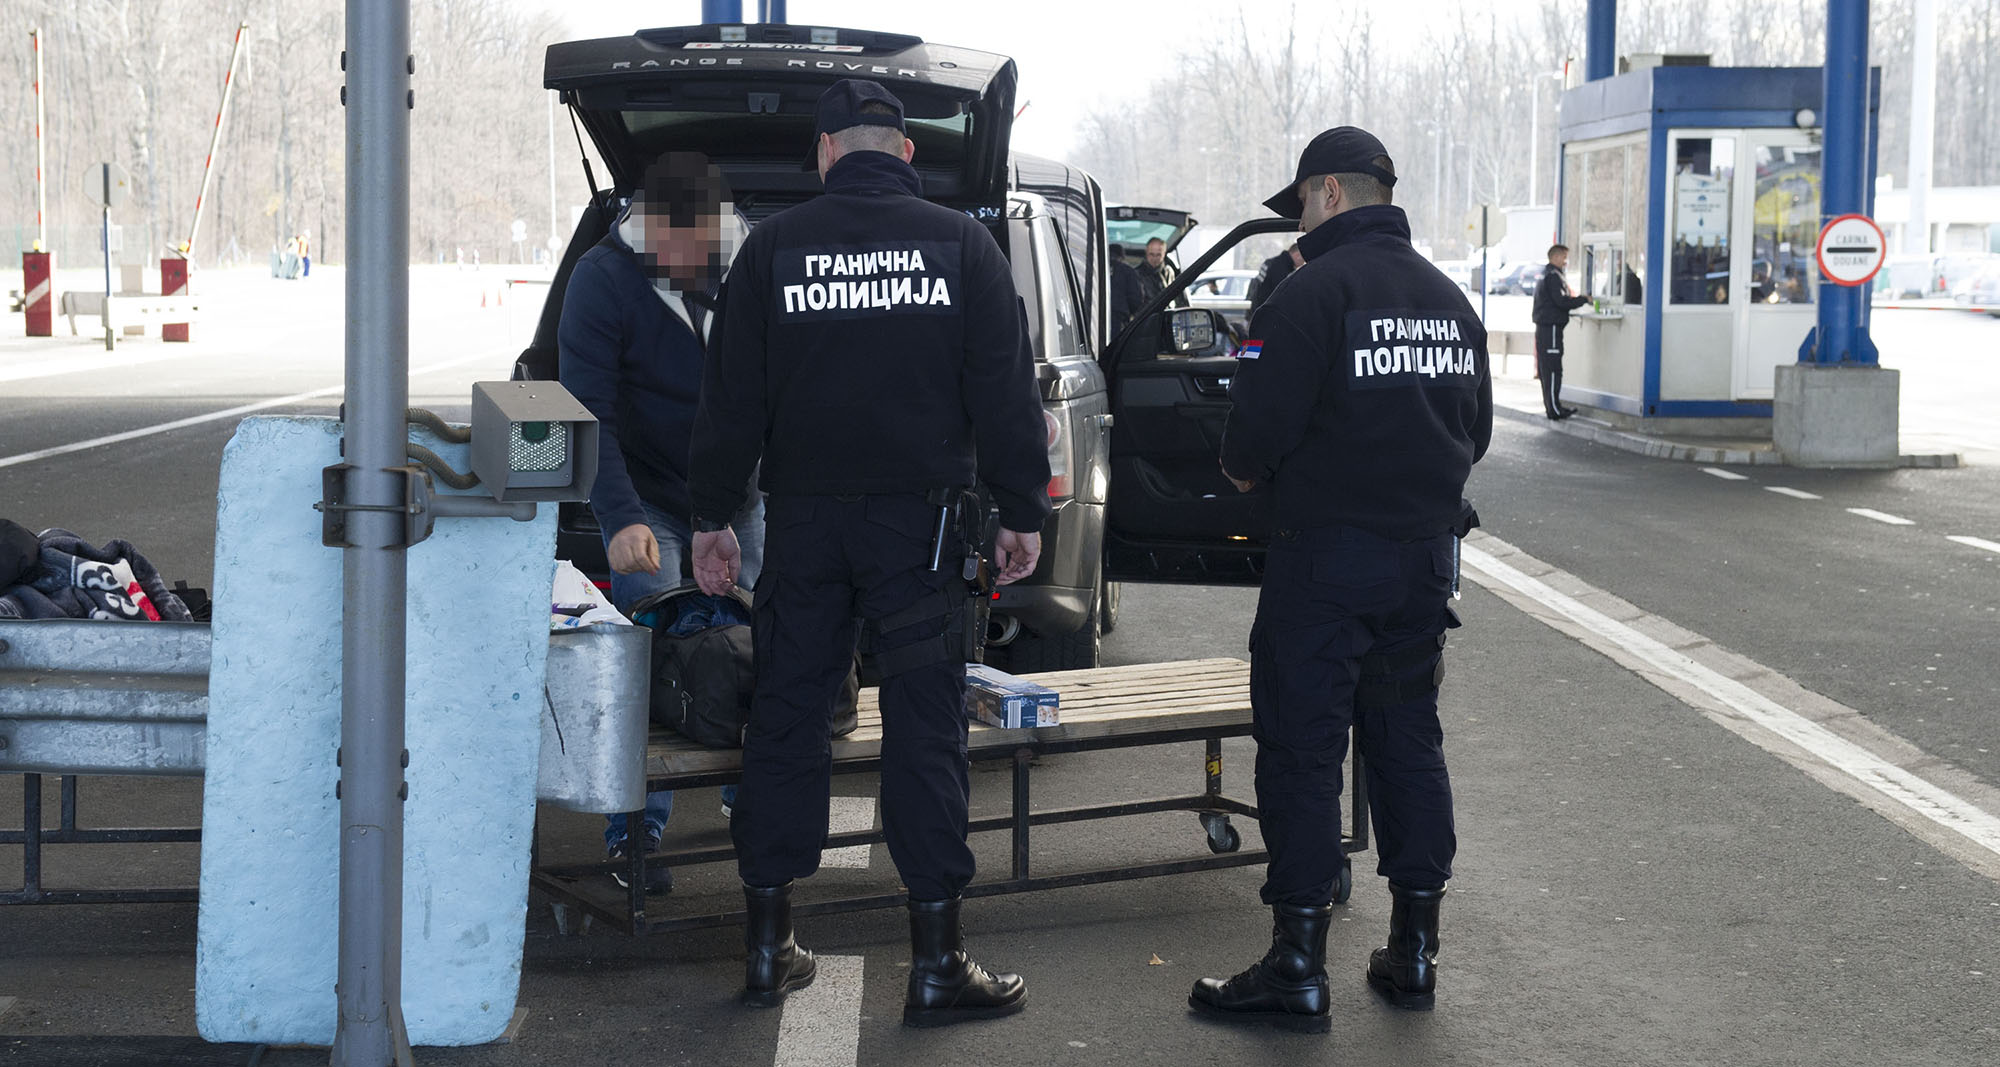 Полицијски службеници на Граничном прелазу Батровци од данас у новим униформама